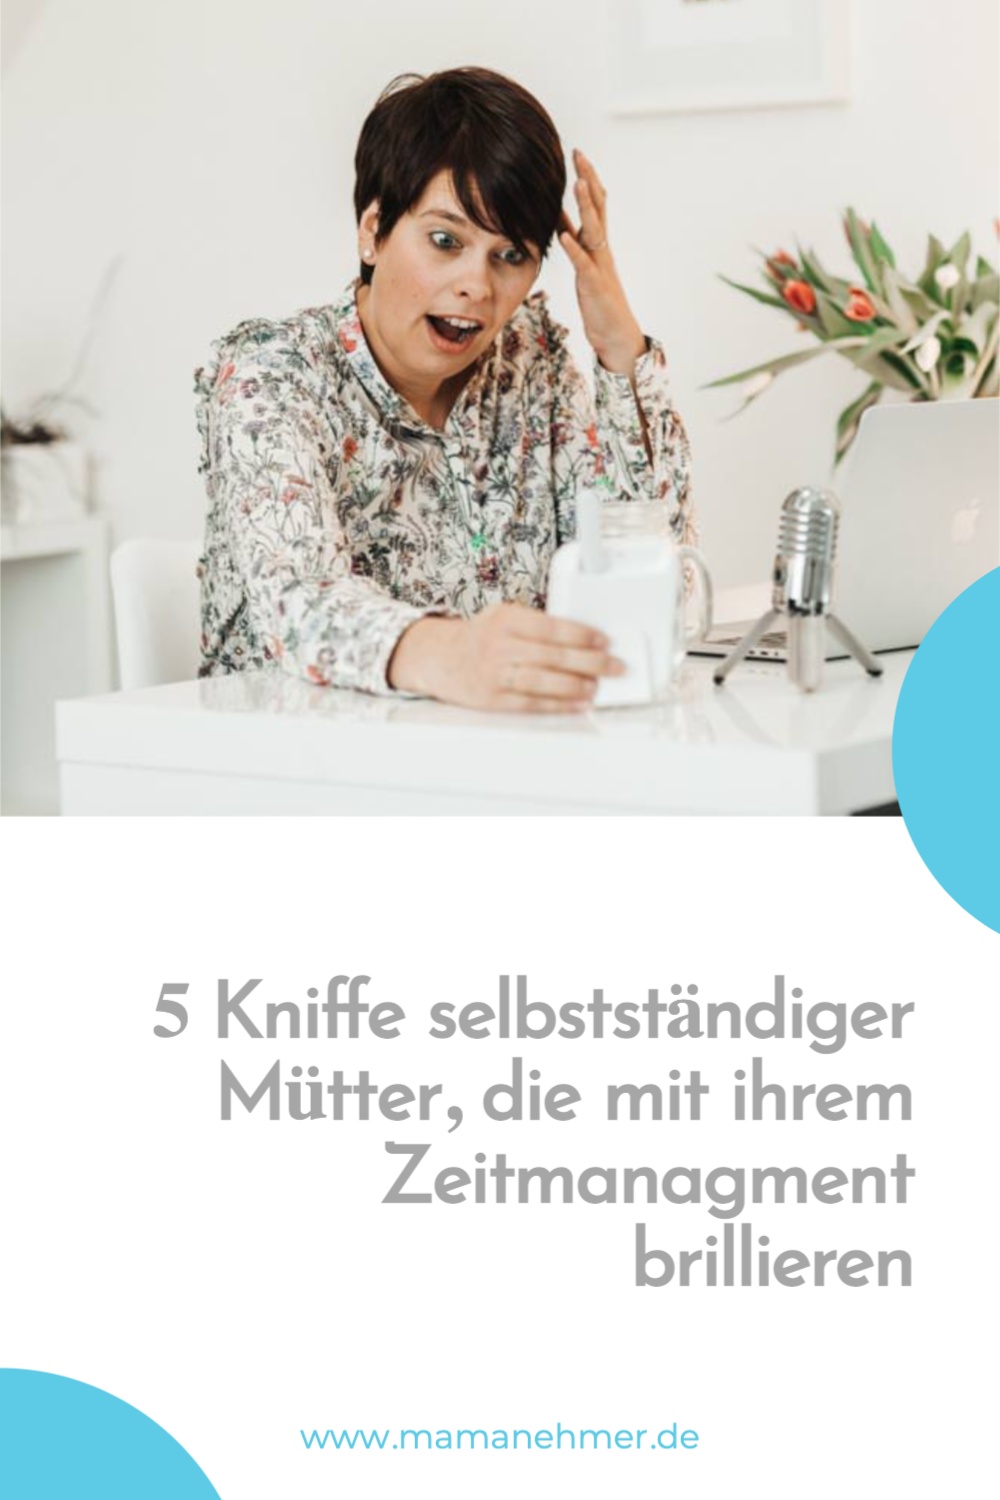 5 Kniffe selbstständiger Mütter, die mit ihrem Zeitmanagment brillieren